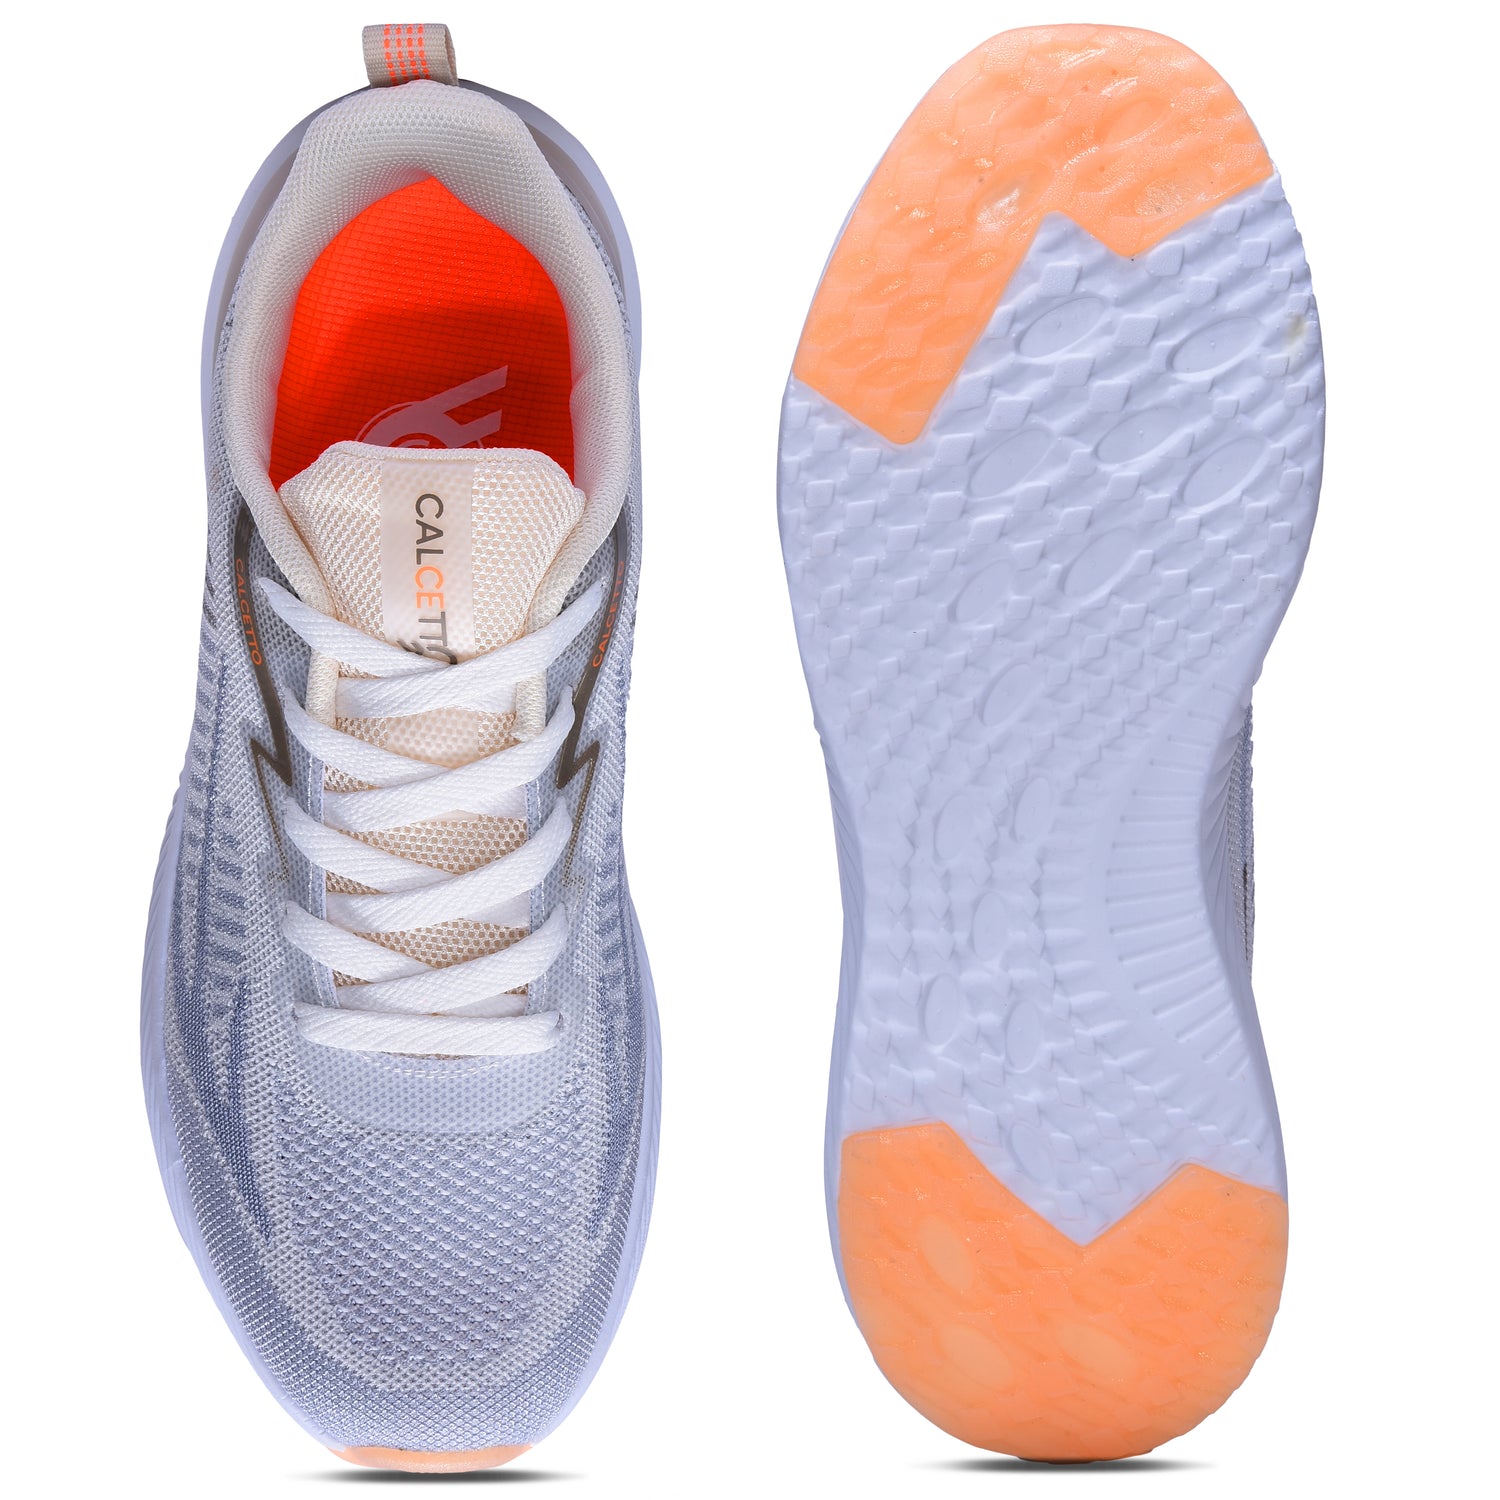 Calcetto CLT-0987 Beige Orange Running Shoe For Men